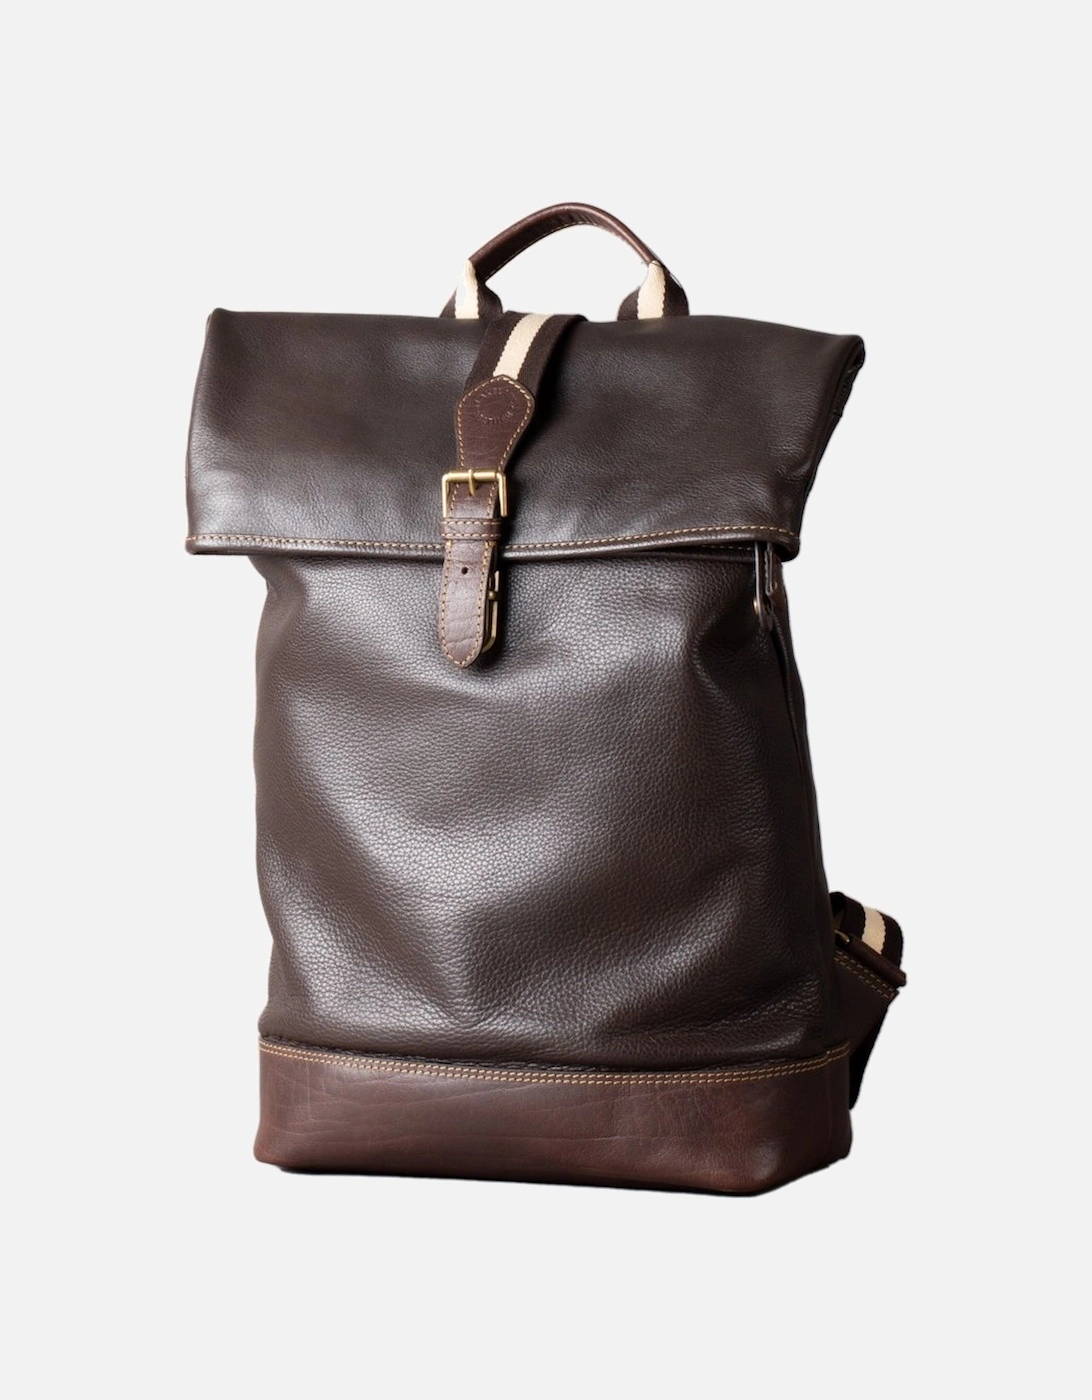 Kelsick Leather Rolltop Backpack, 6 of 5